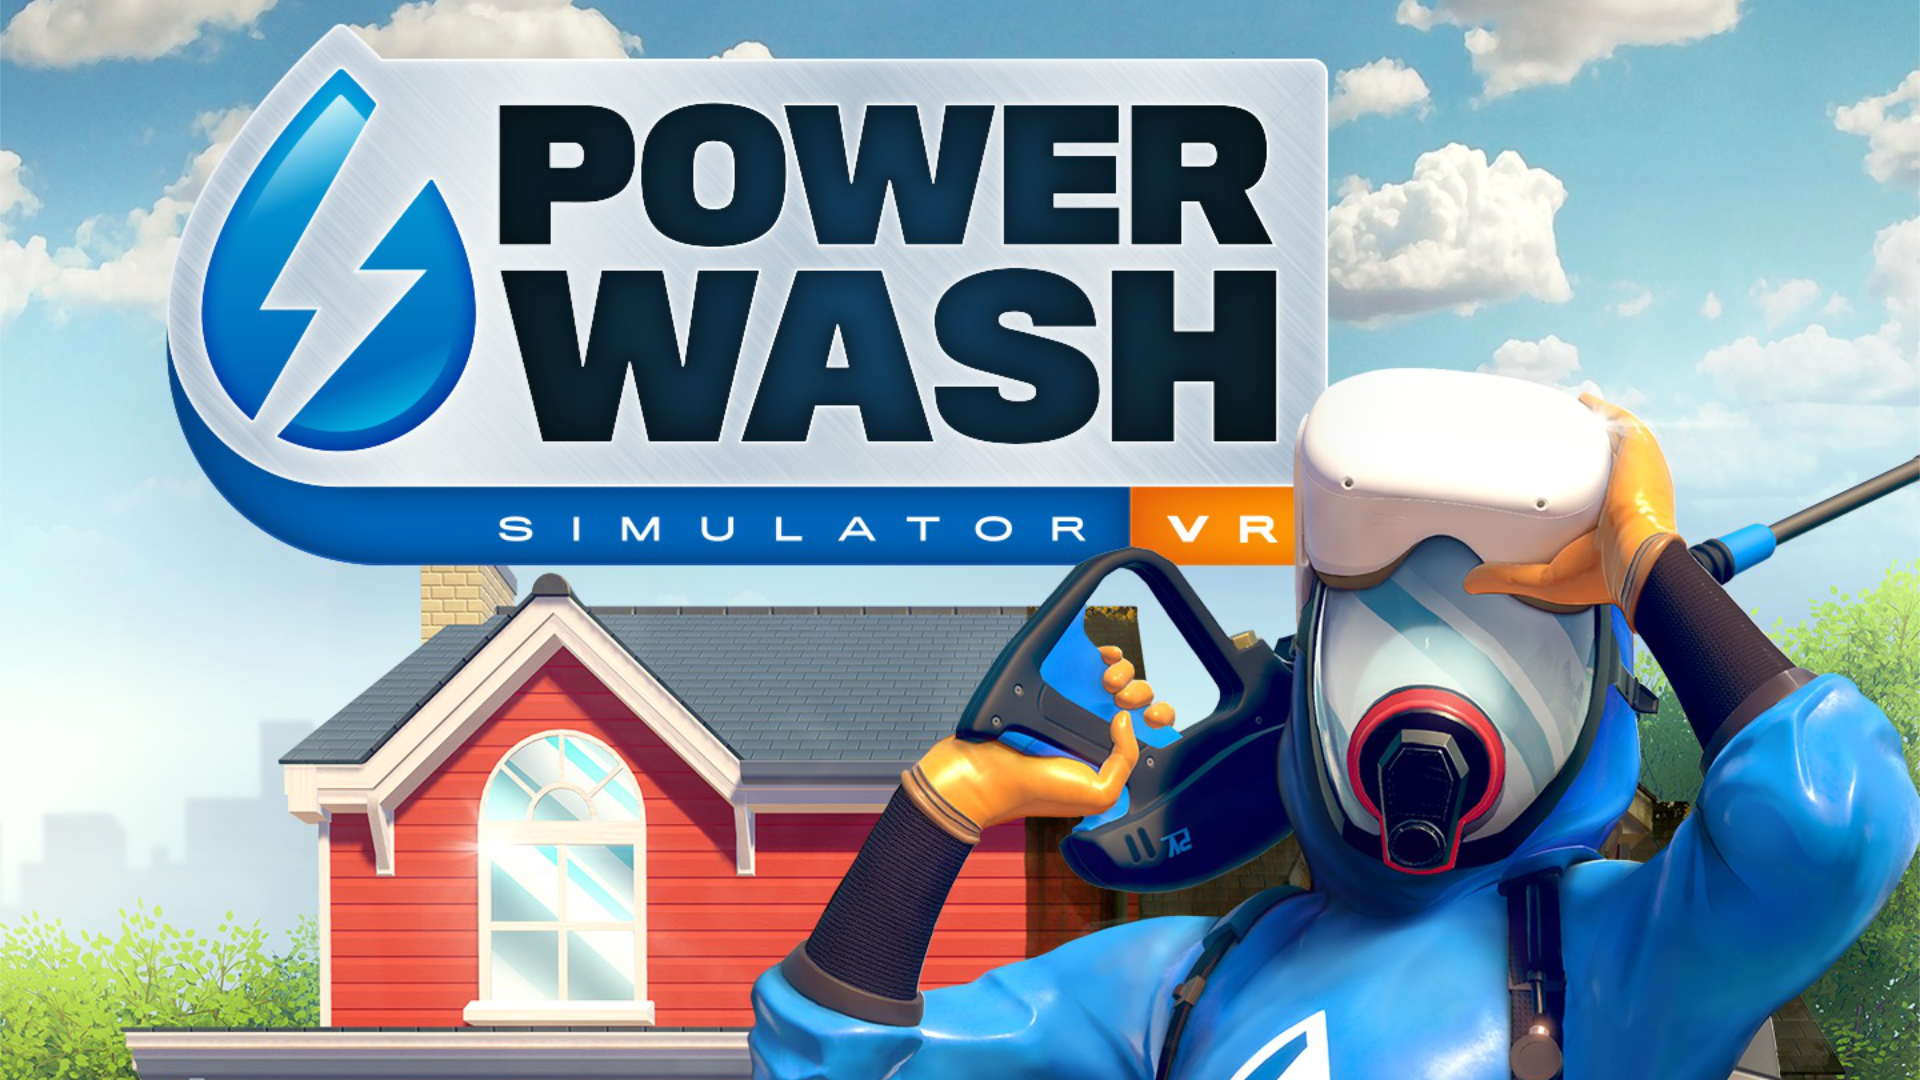 PowerWash Simulator VR Announced for Meta Quest 2